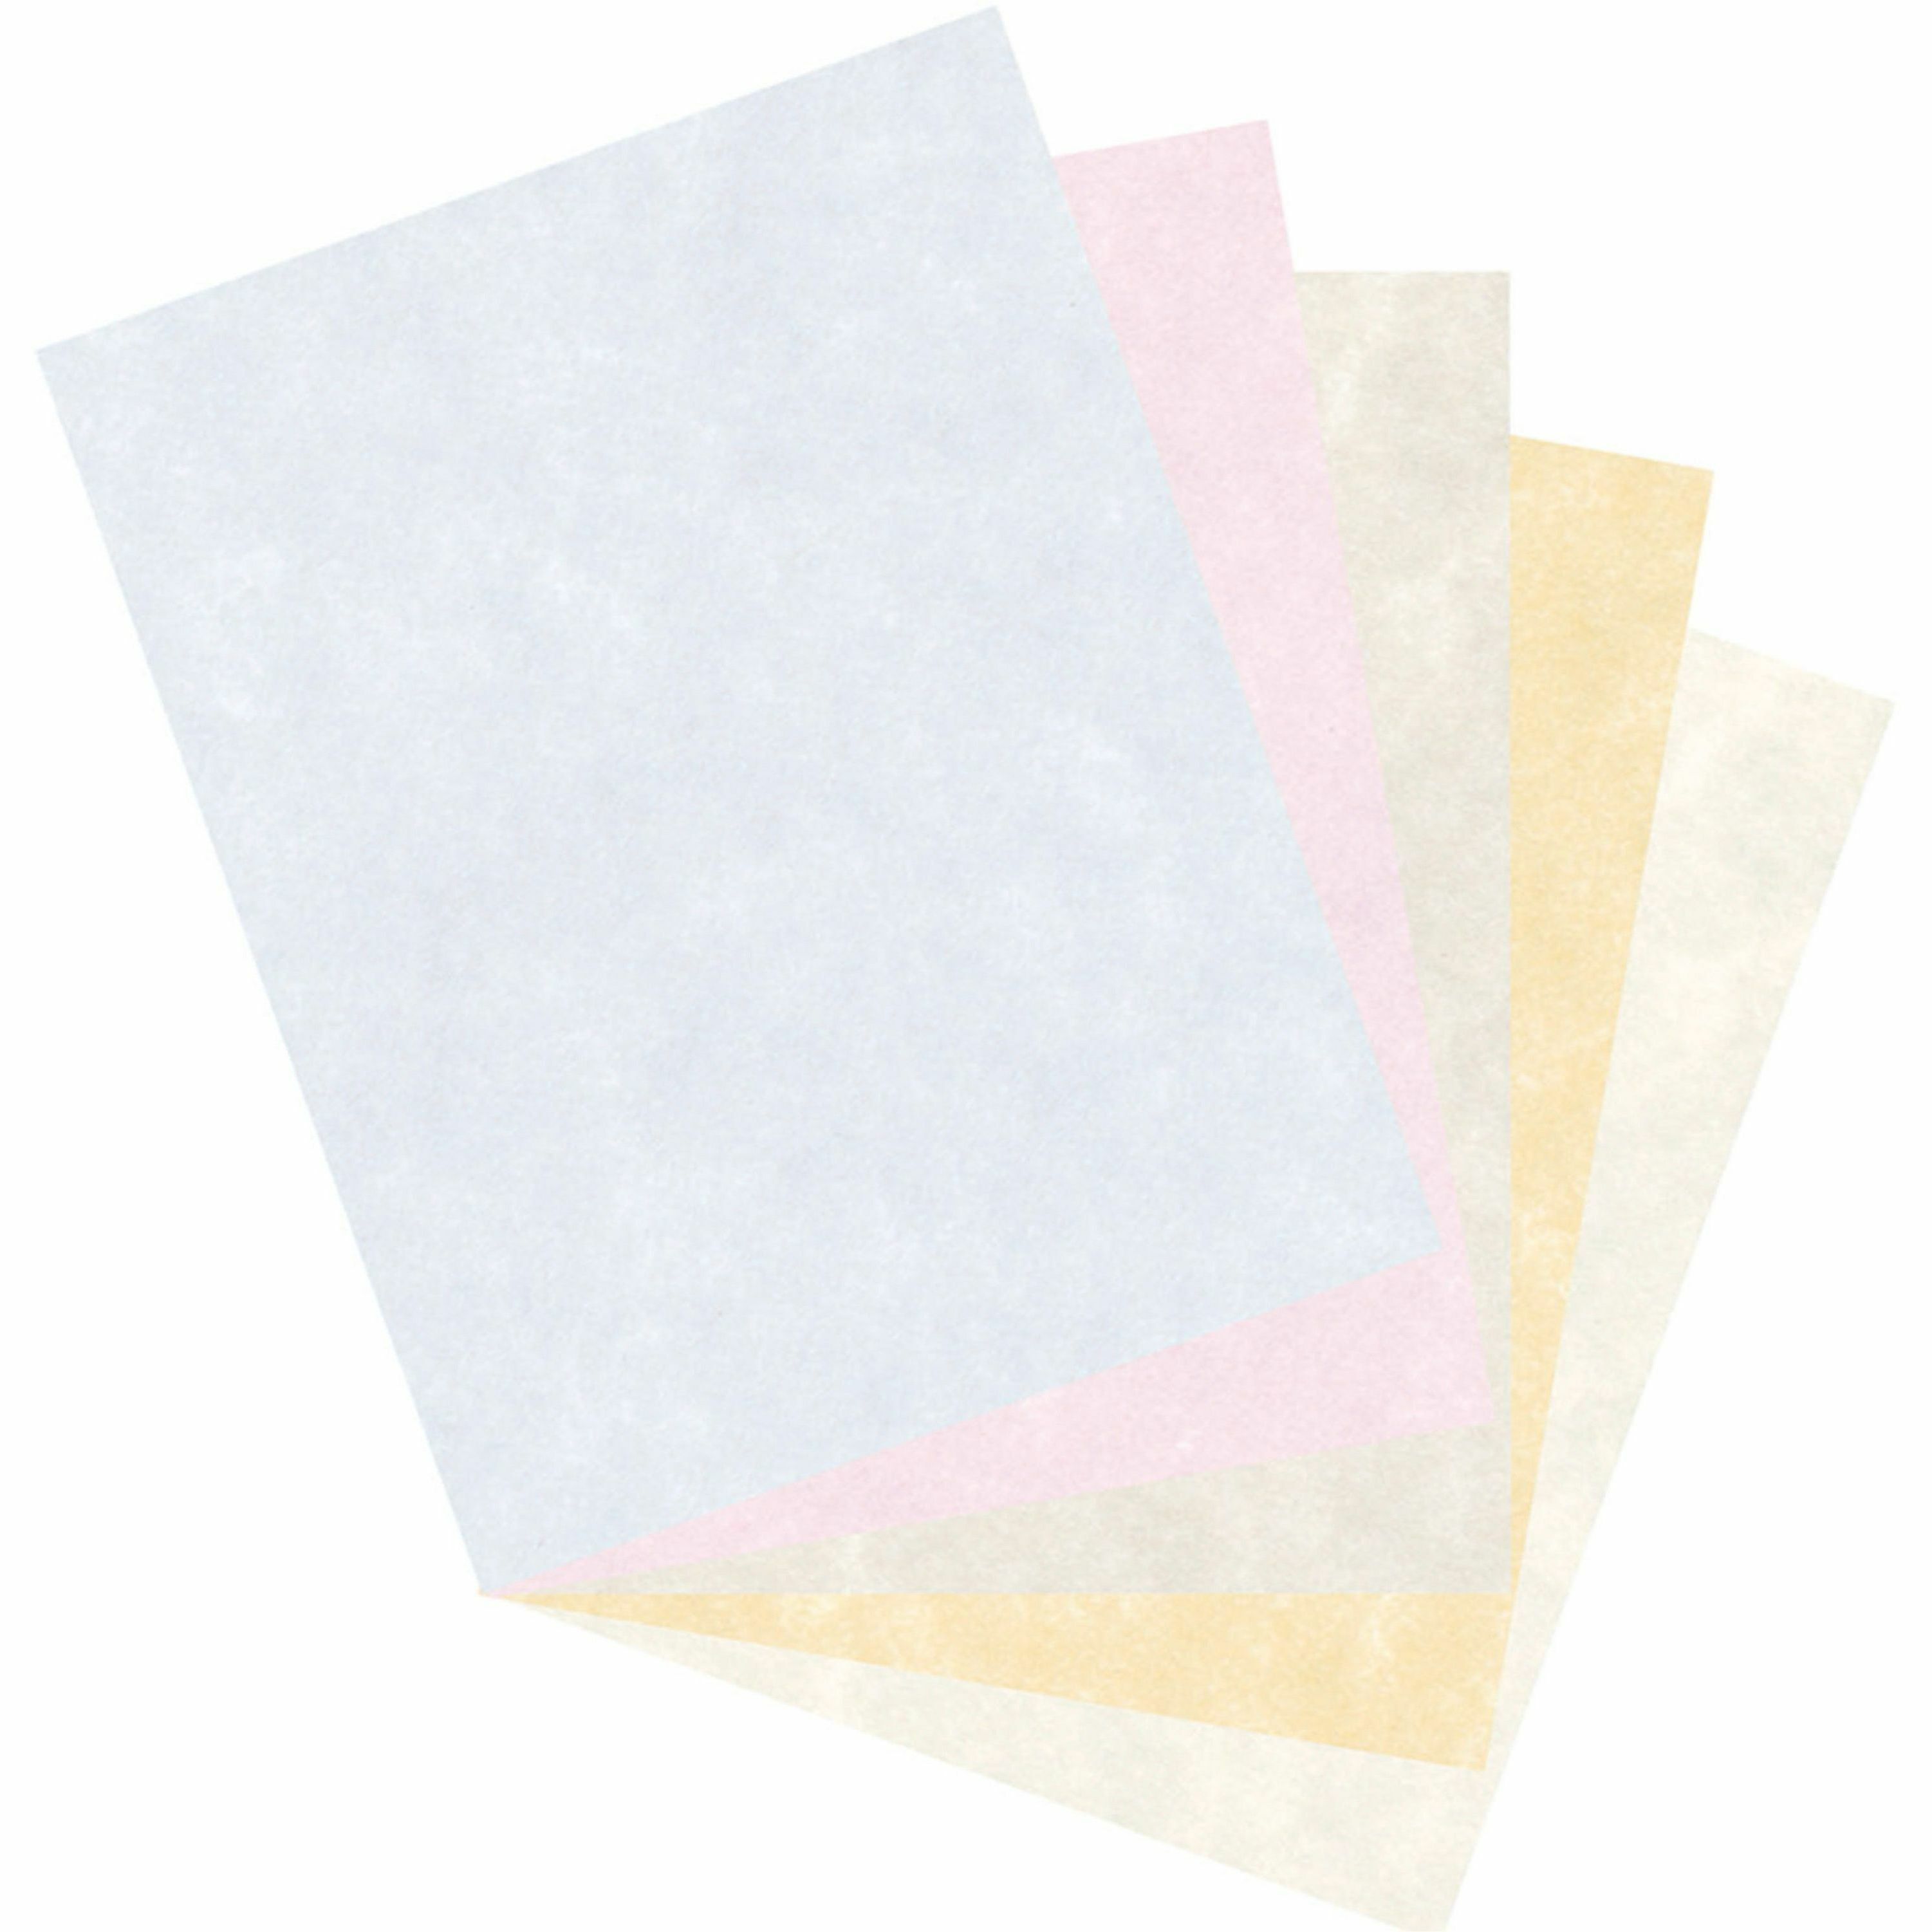 Astrobrights Color Cardstock, Letter, Smooth - 100 / Pack